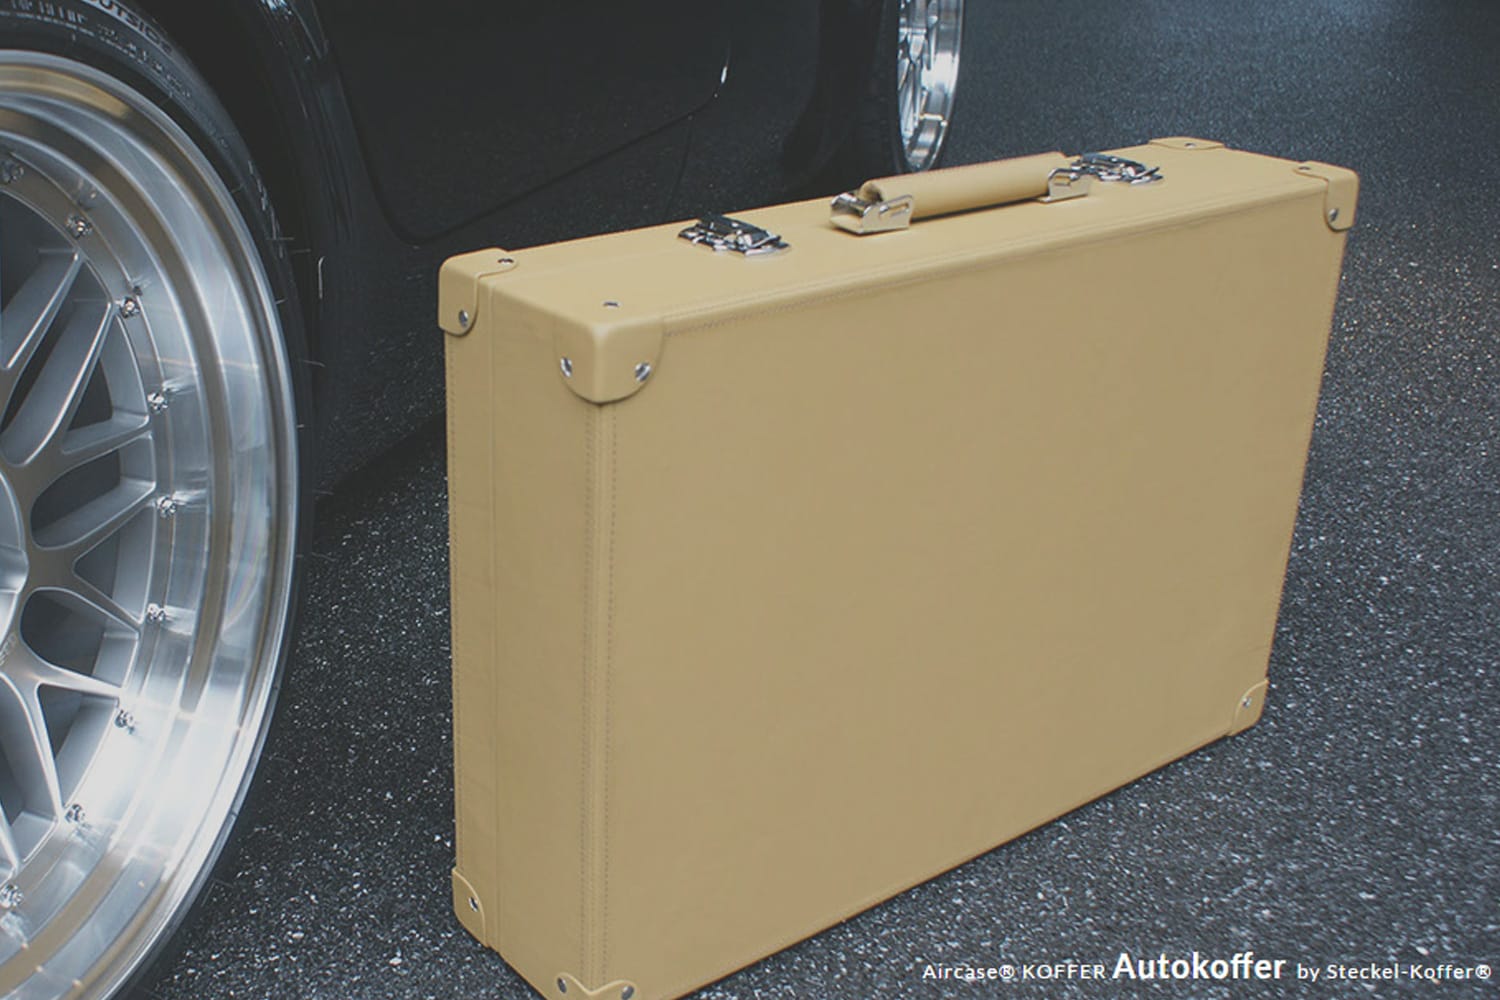 In der Manufaktur von Steckel-Koffer können Sie sich ab 2.979 Euro Ihren ganz pesönlichen Aircase Autokoffer designen und anfertigen lassen. Das Außenmaterial wird dabei auf Ihr Auto abgestimmt.